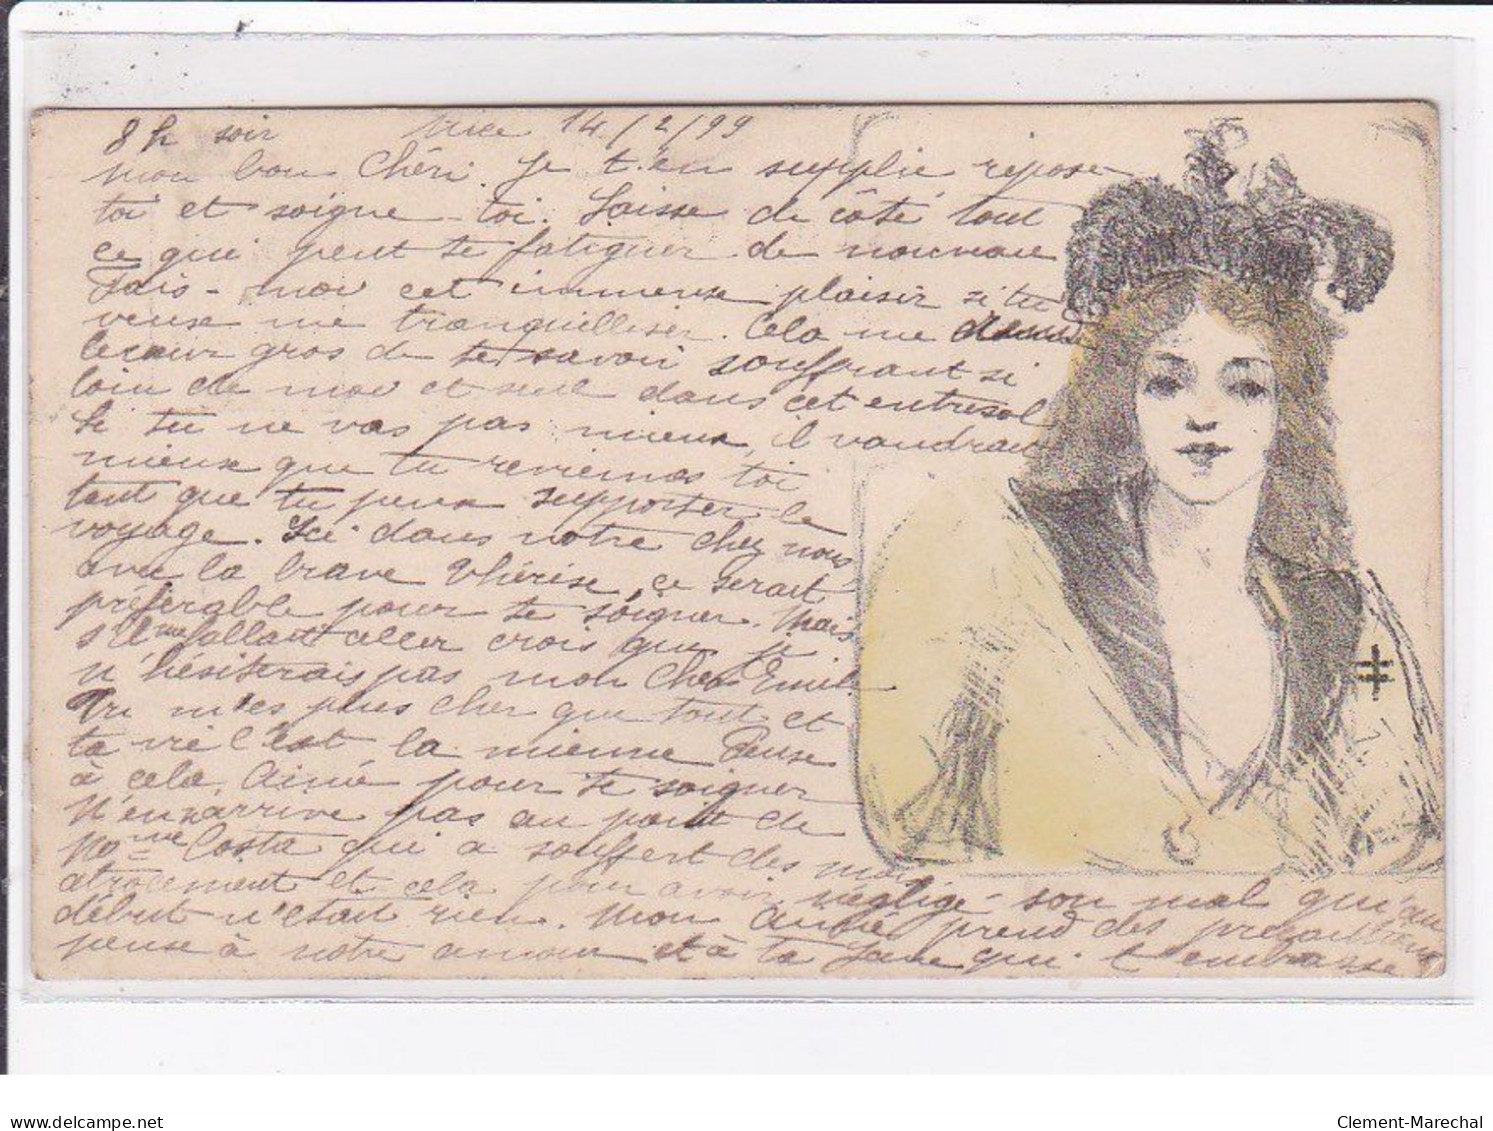 Jean de CALDAIN : lot de 8 cartes postales de 1898 (femmes) autographe de Raoul THOMEN - bon état général